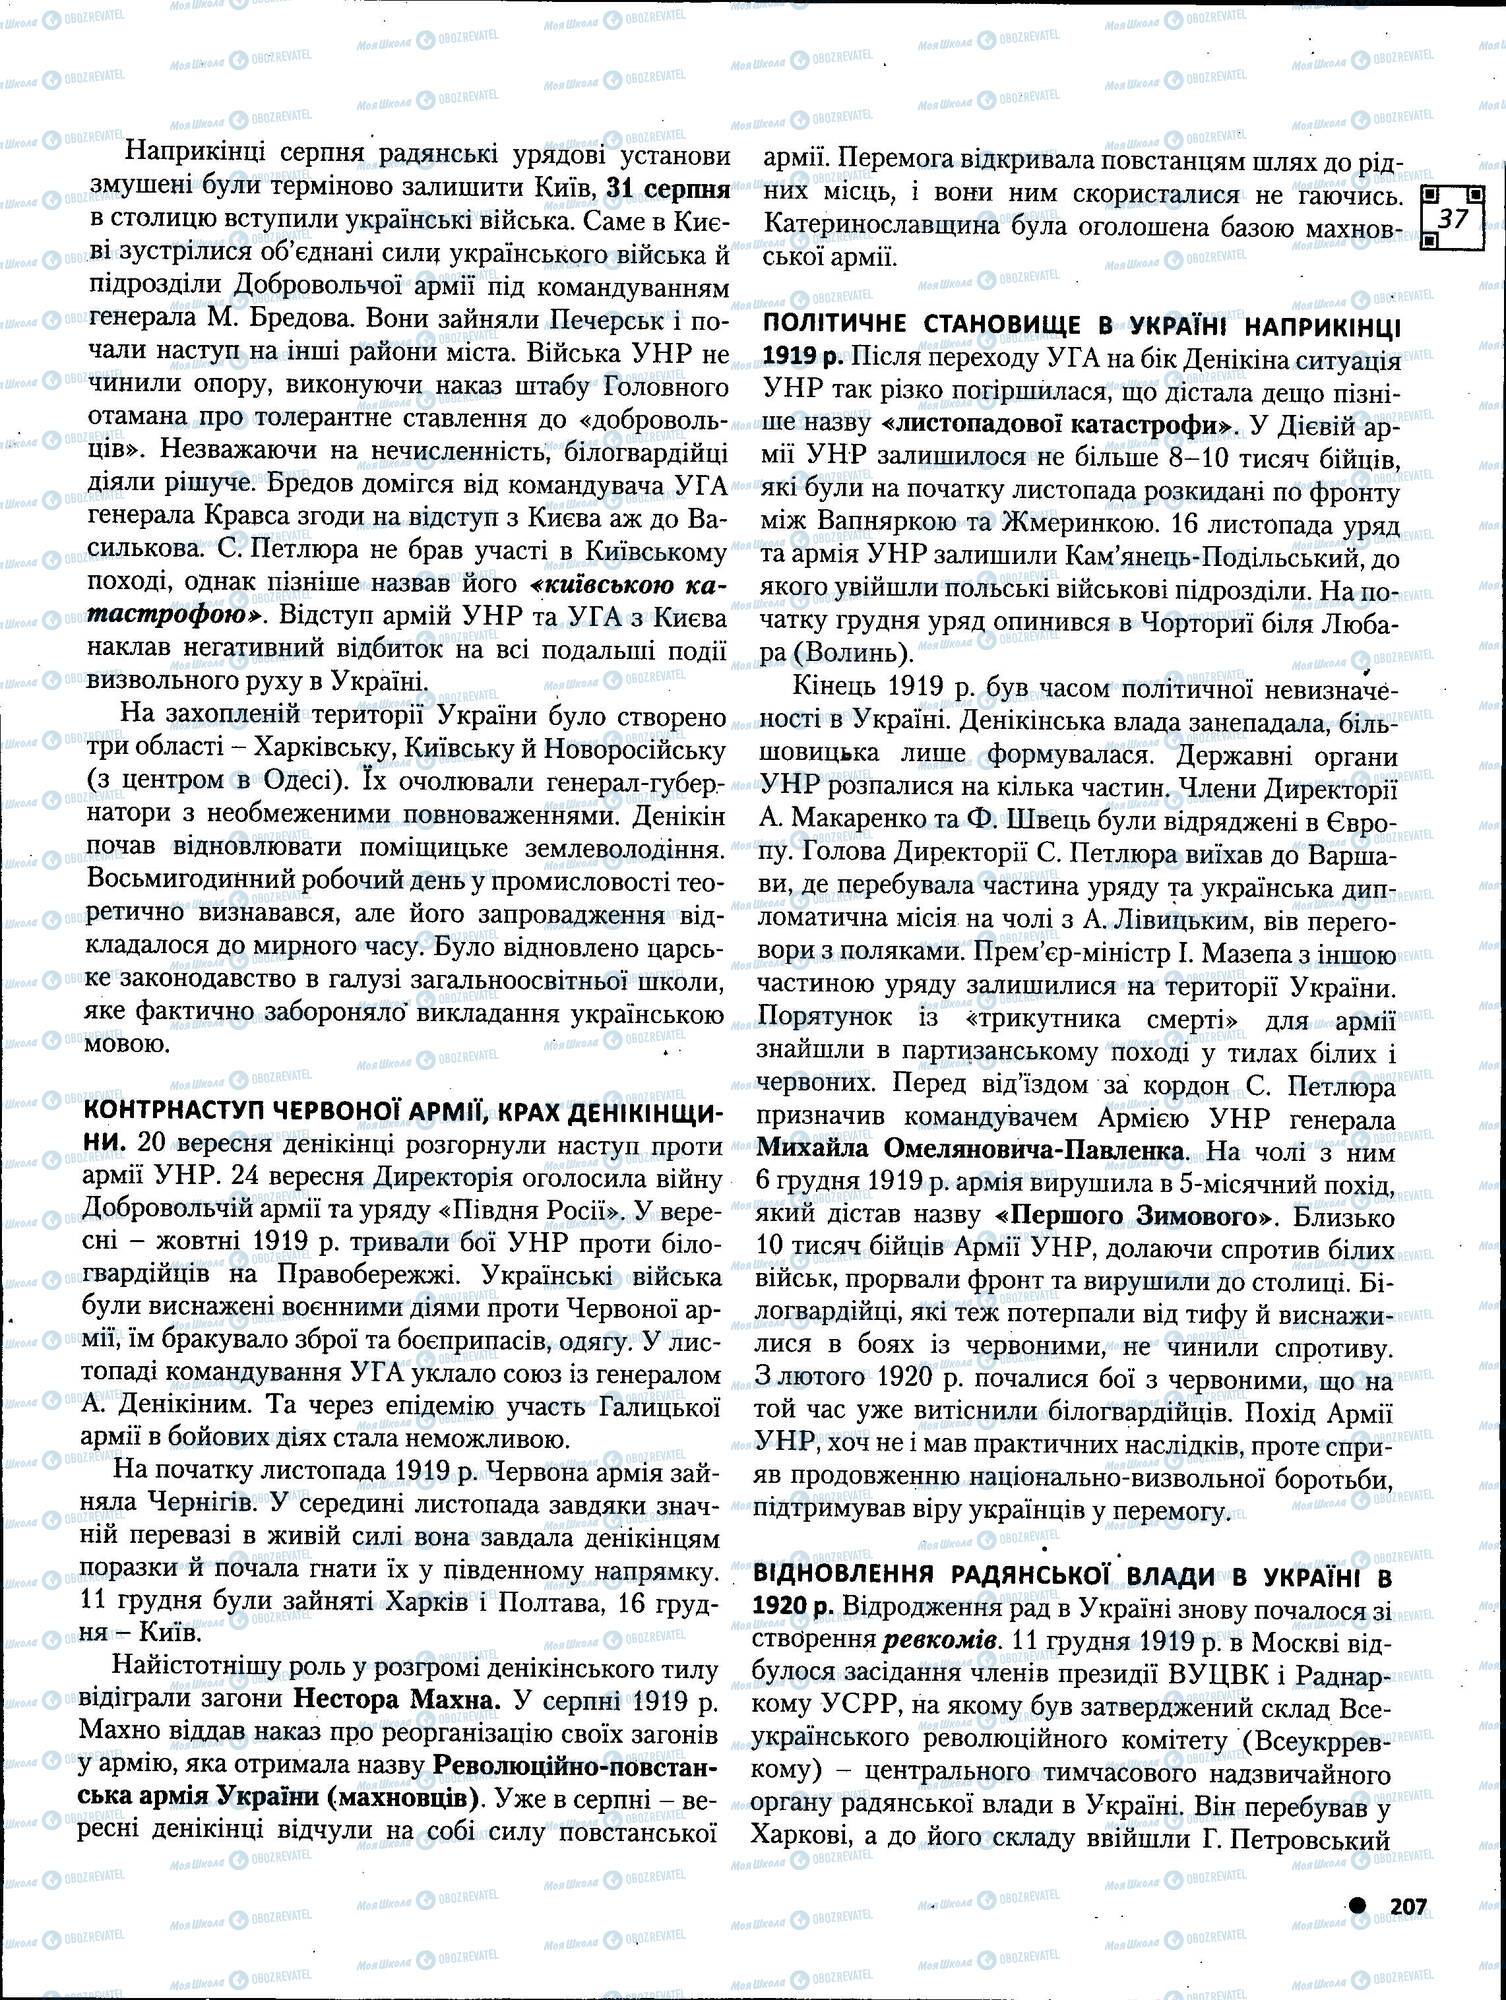 ЗНО История Украины 11 класс страница 207